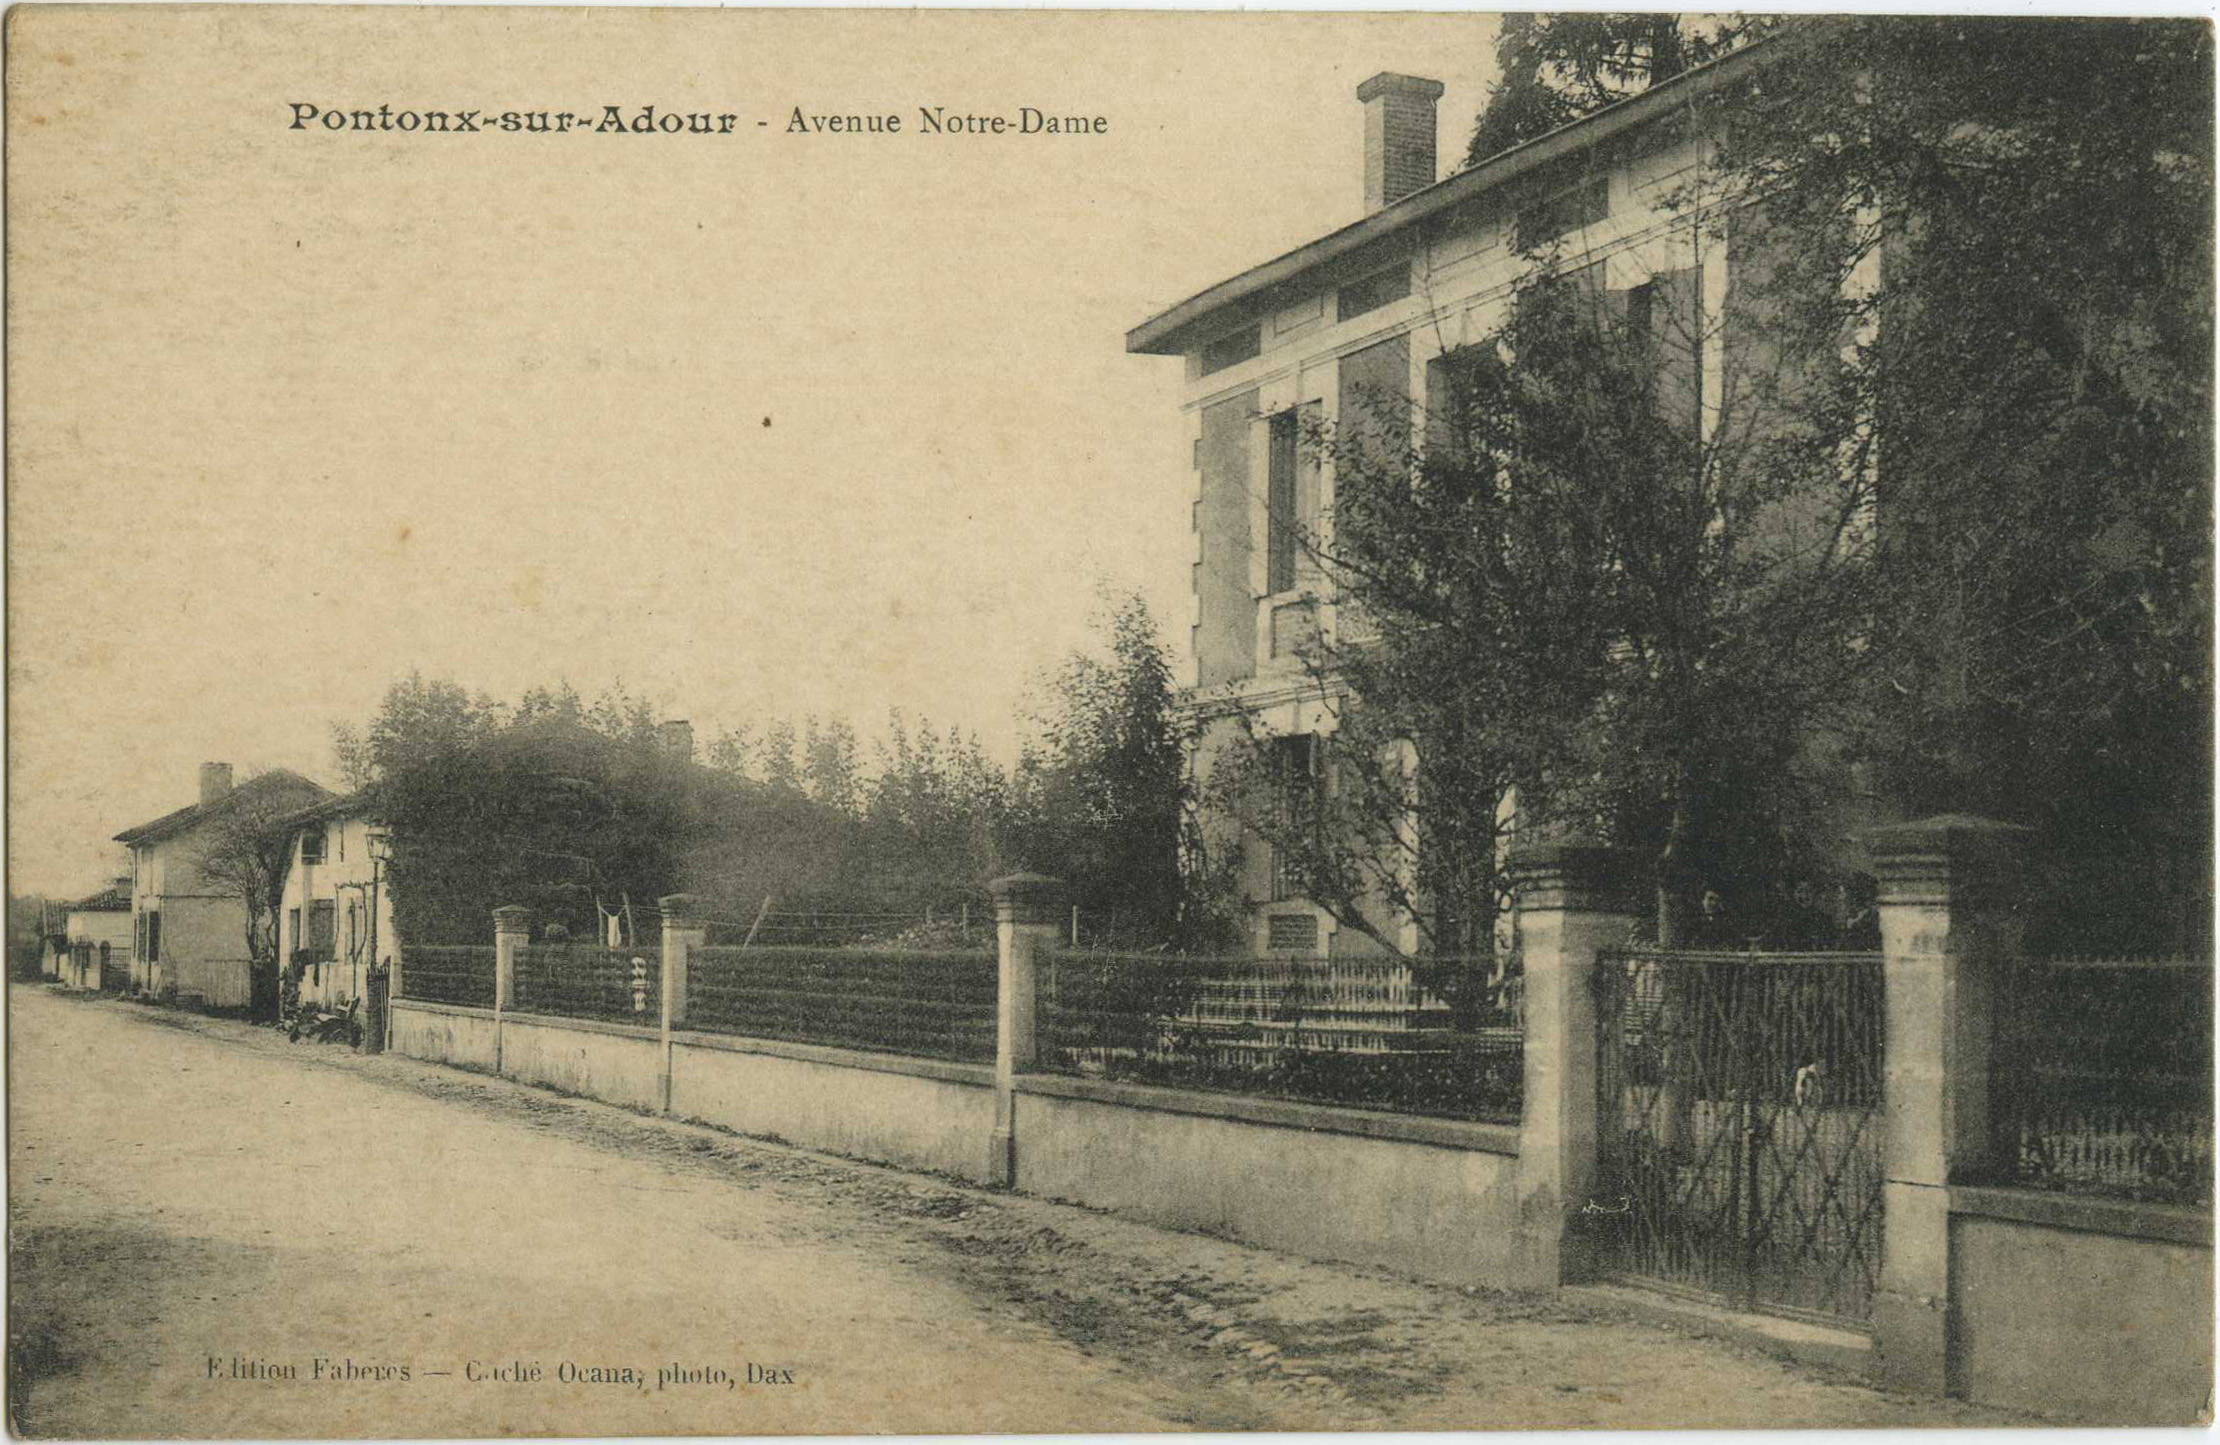 Pontonx-sur-l'Adour - Avenue Notre-Dame